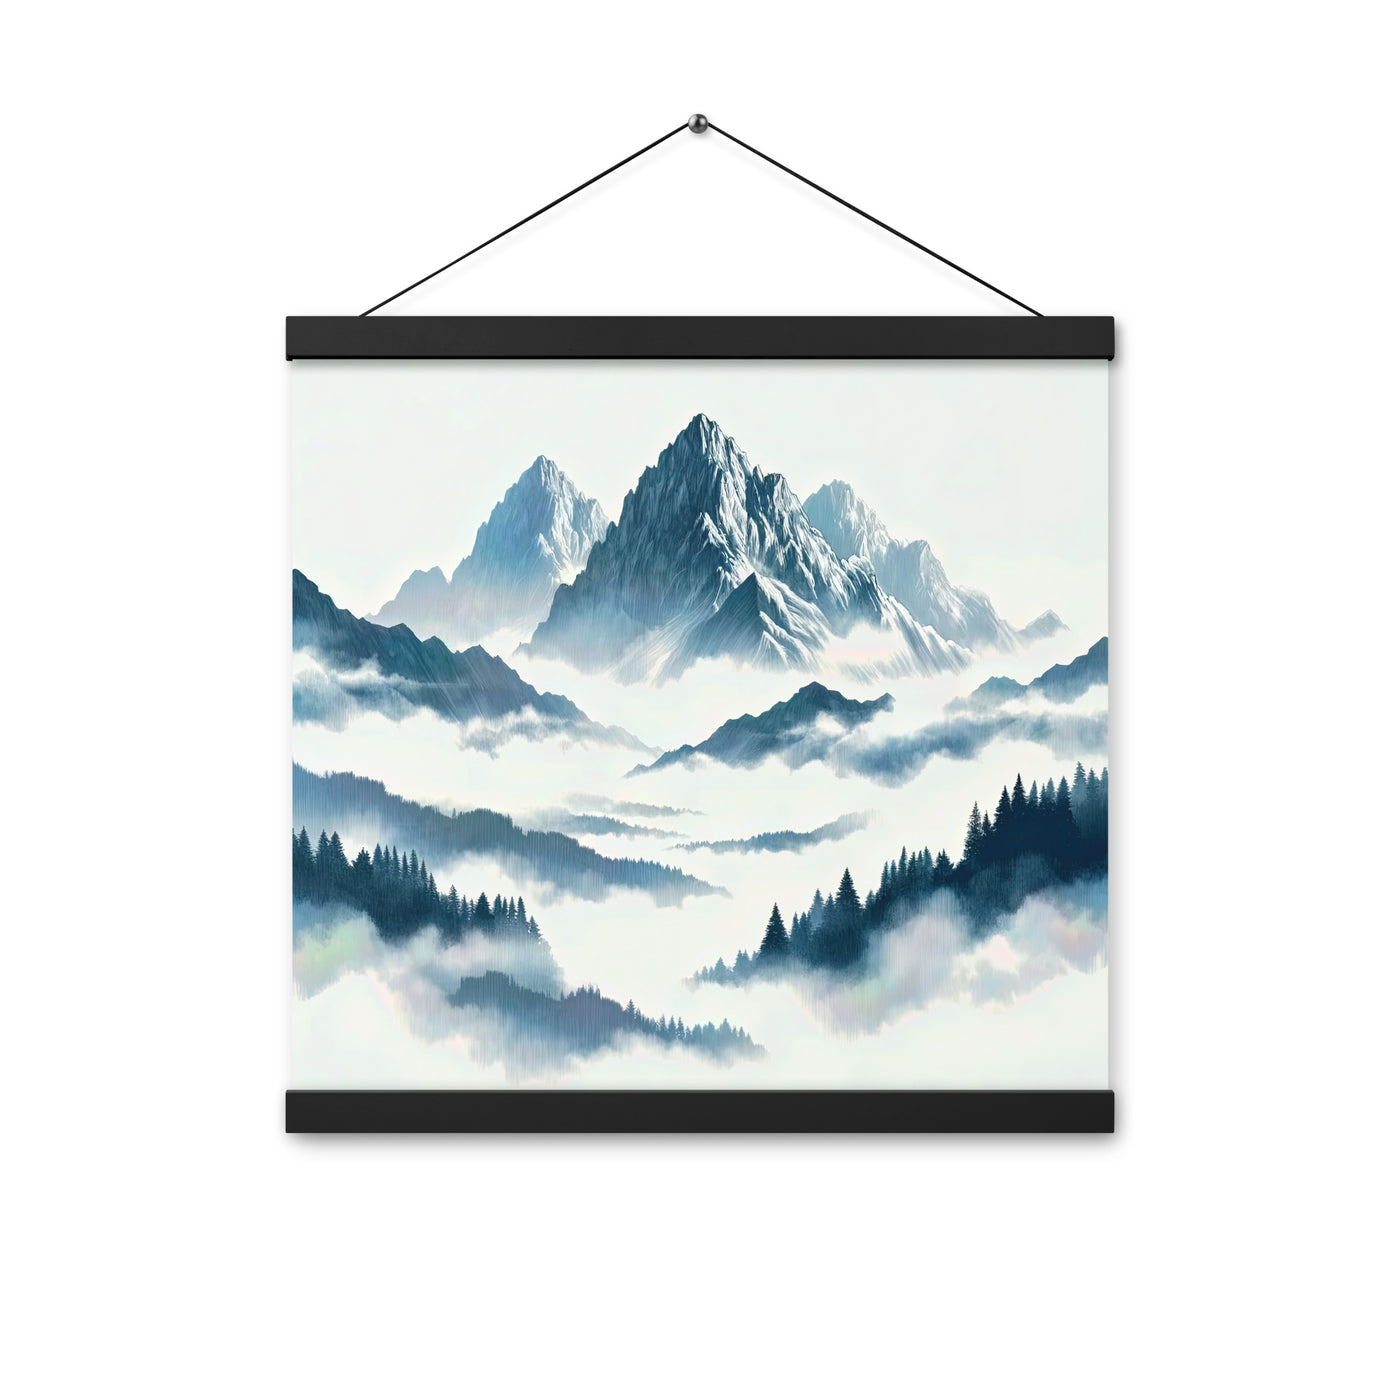 Nebeliger Alpenmorgen-Essenz, verdeckte Täler und Wälder - Premium Poster mit Aufhängung berge xxx yyy zzz 40.6 x 40.6 cm